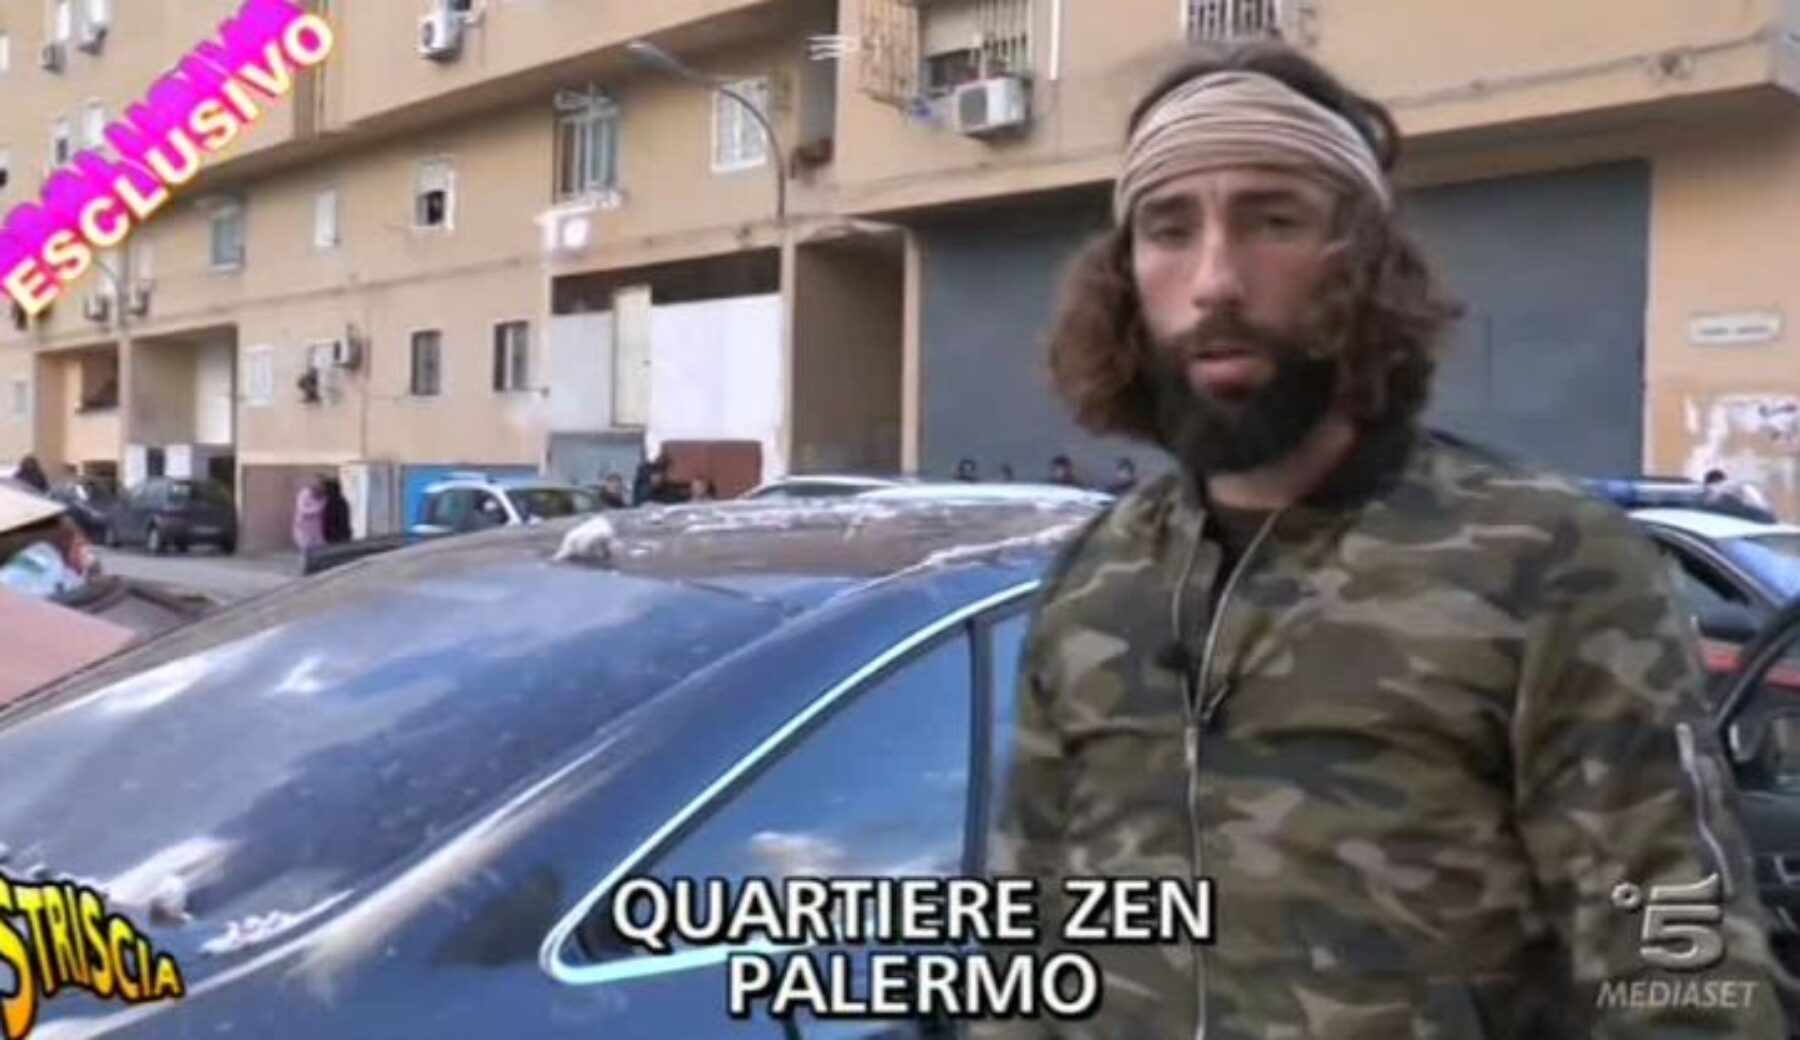 Brumotti aggredito a Palermo: la gente del quartiere Zen al fianco dell’inviato di Striscia la notizia